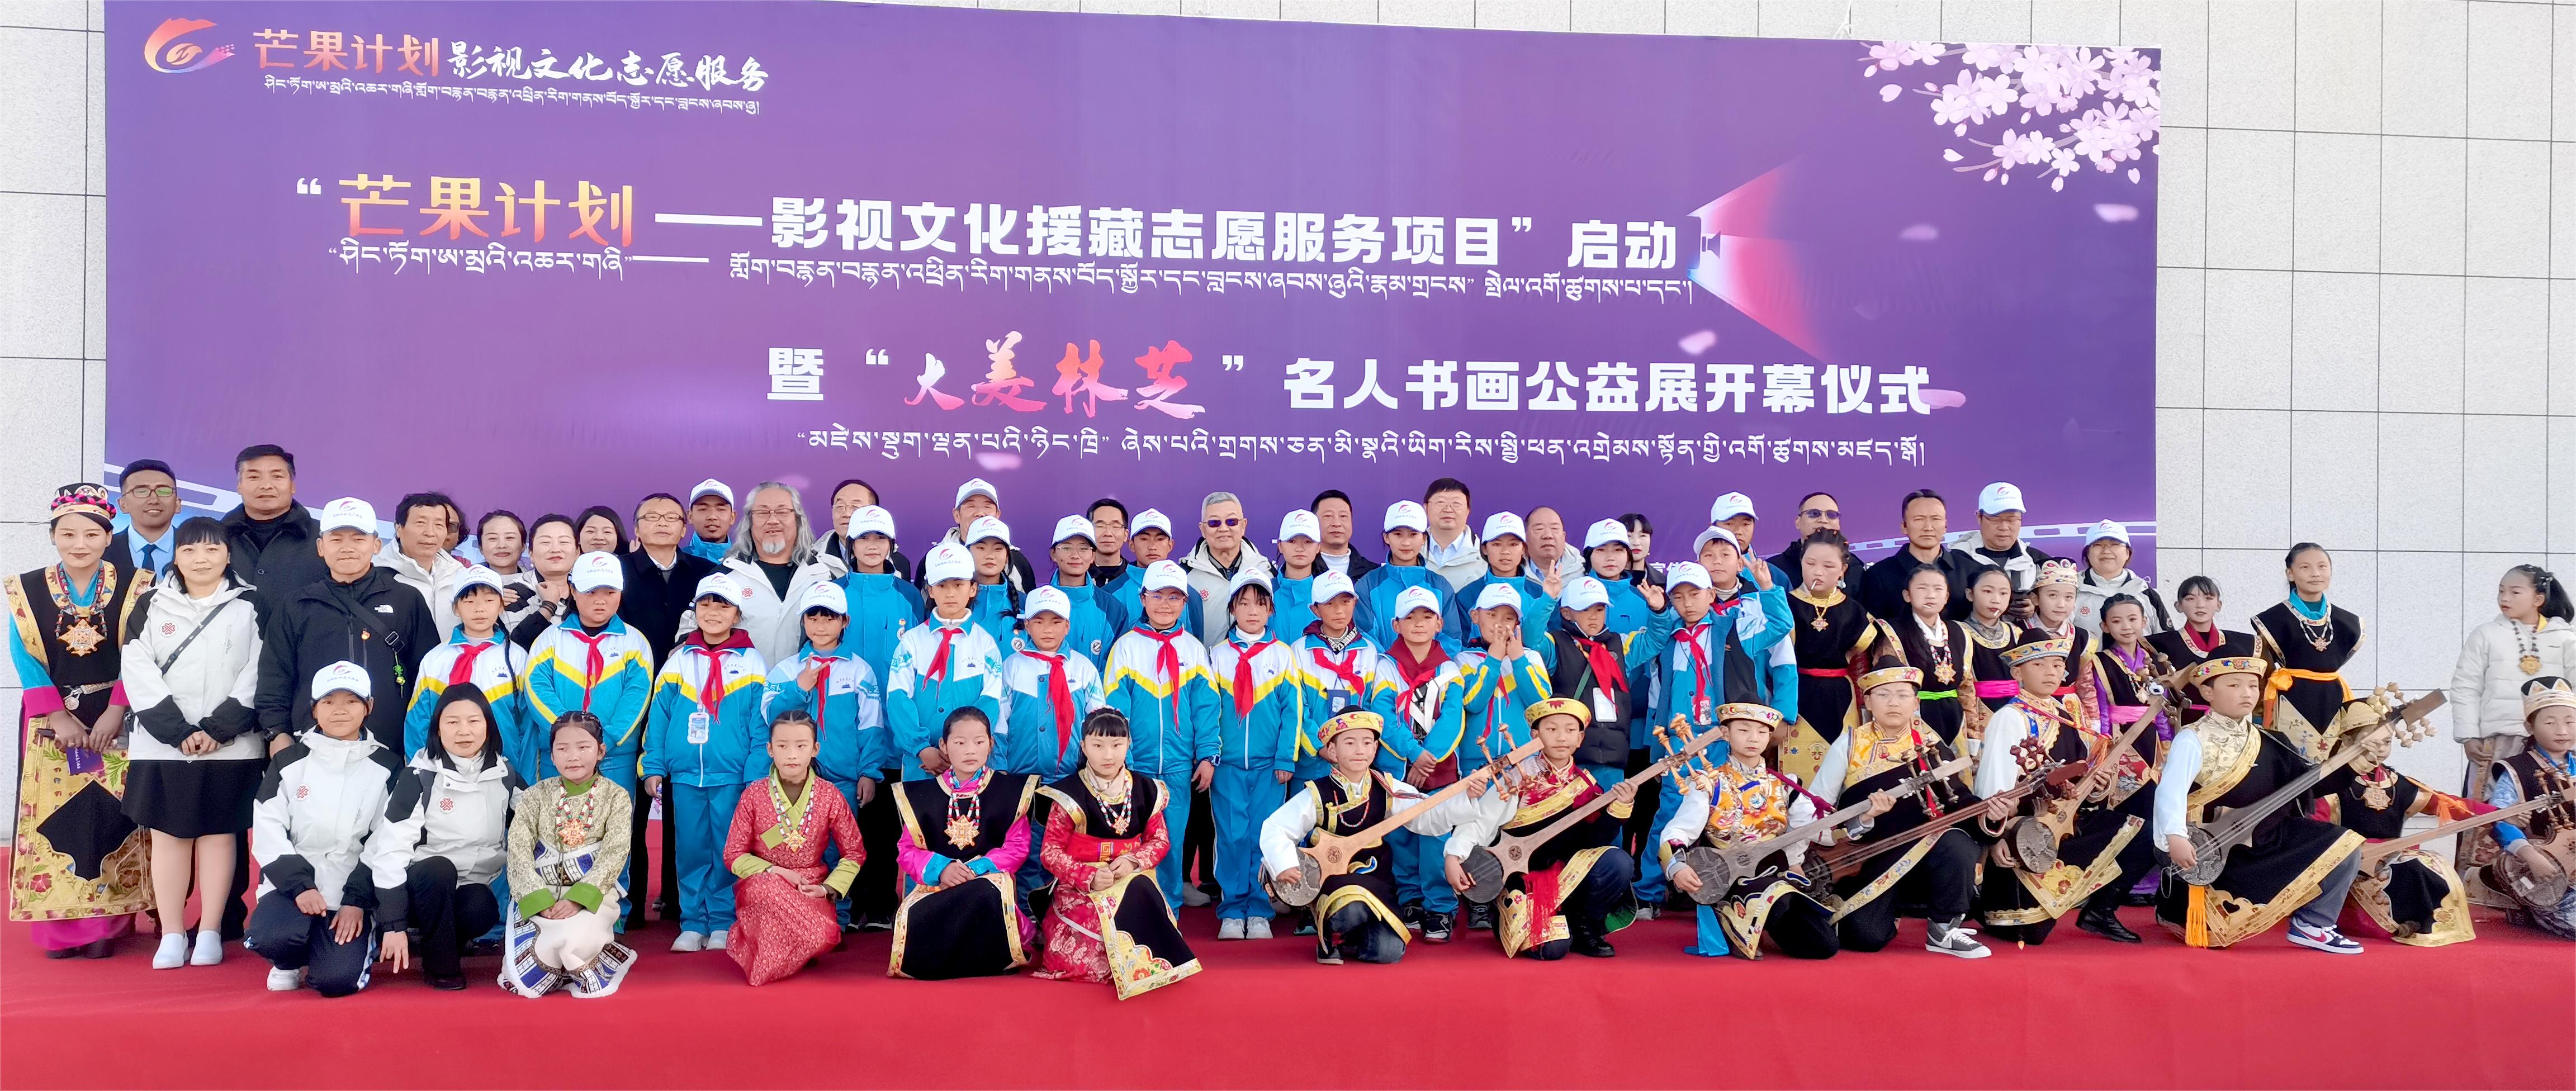 中国志愿服务基金会“芒果计划—影视文化援藏志愿服务项目”暨“大美林芝”名家书画作品公益展在林芝举行